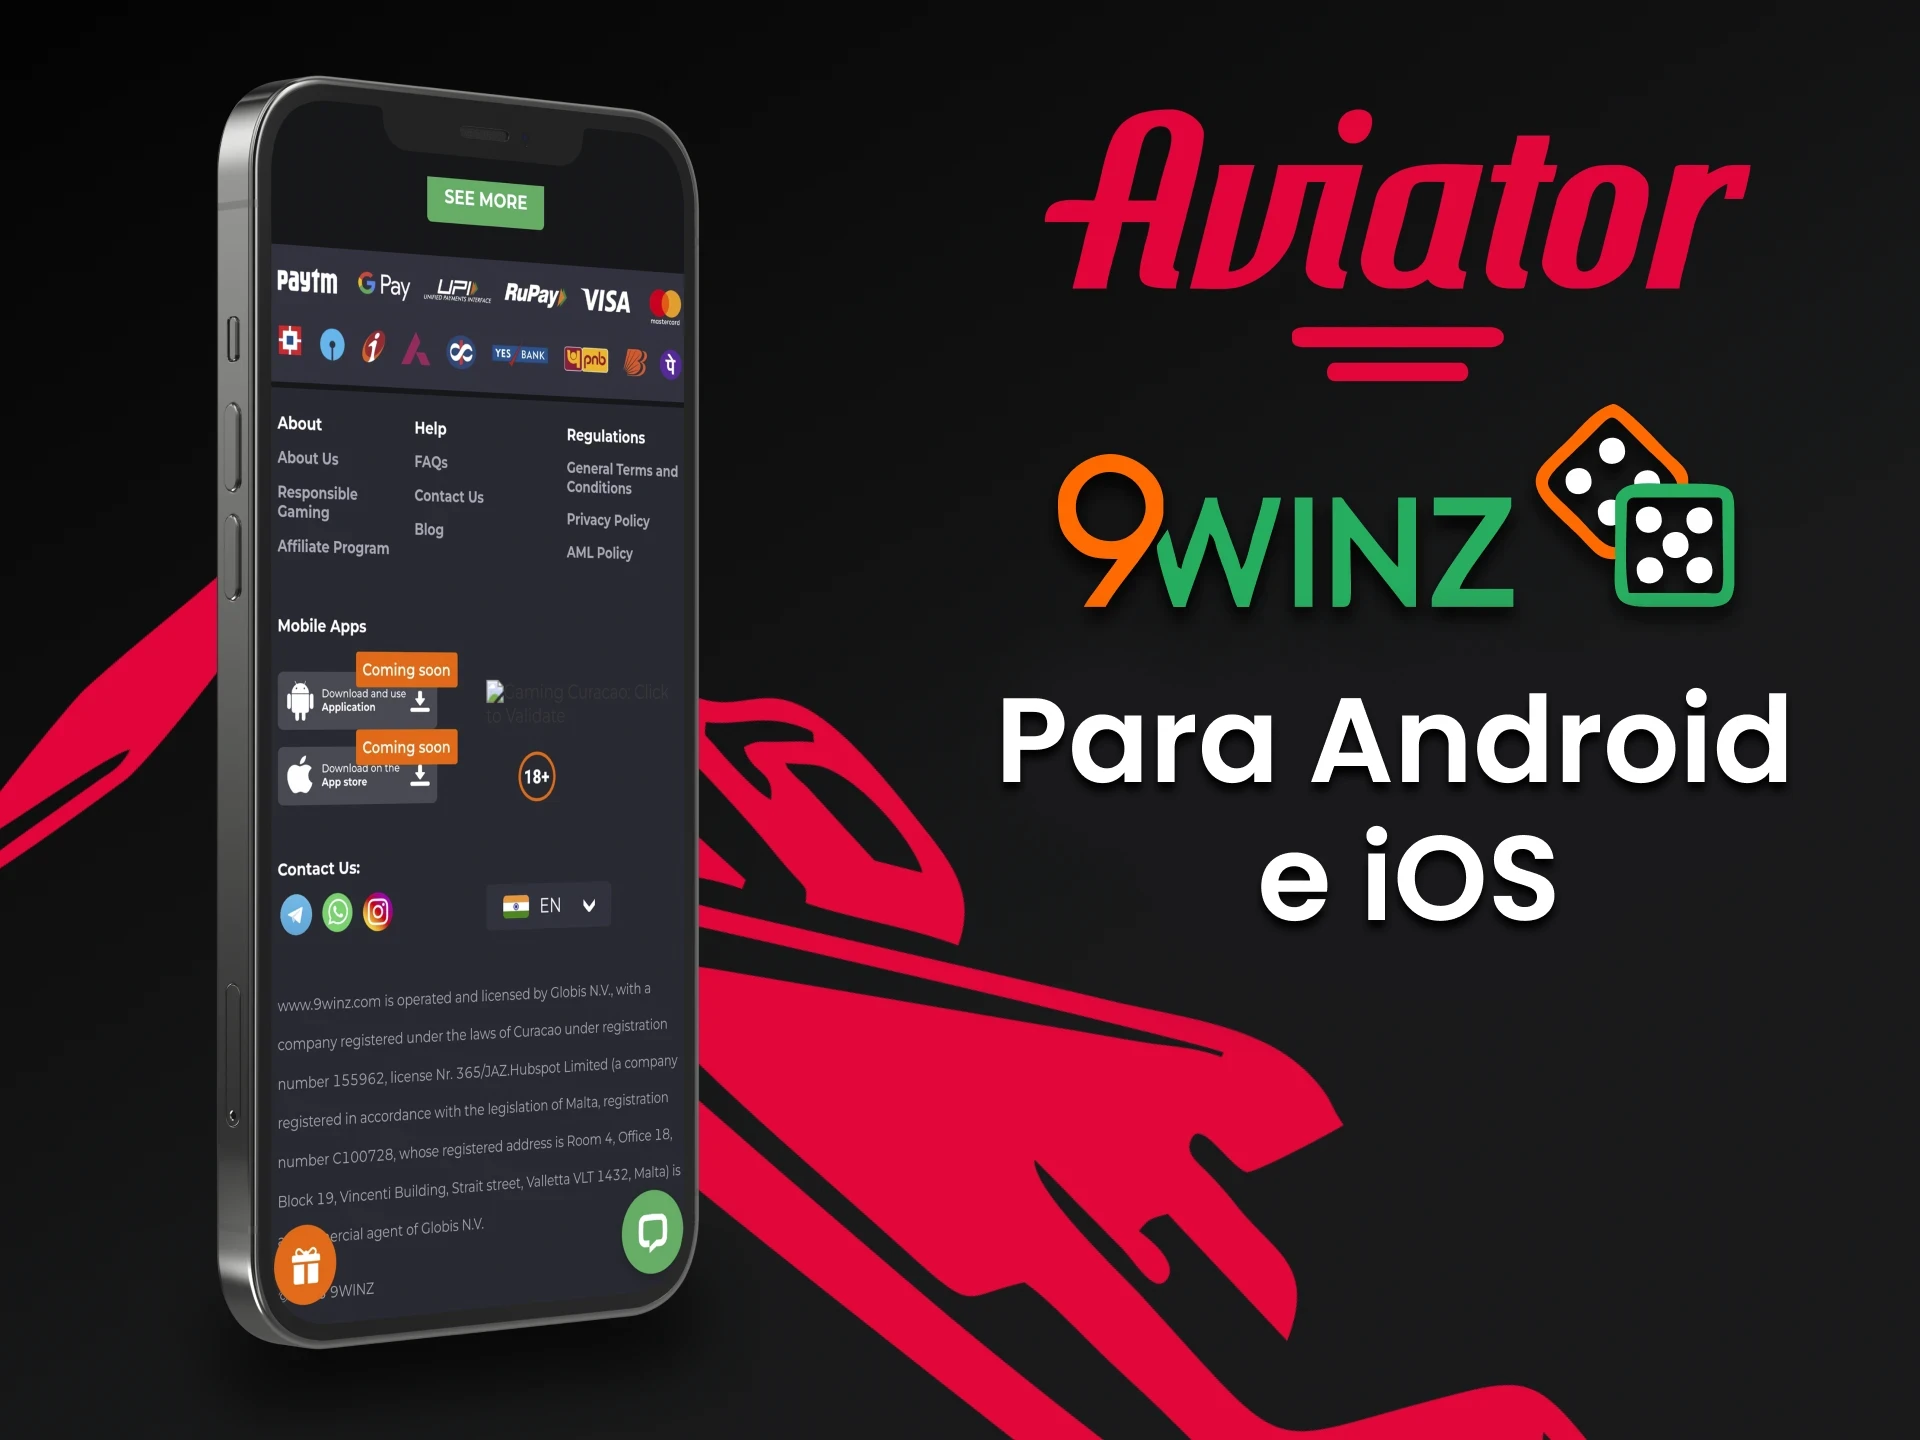 Os aplicativos da 9winz para iOS e Android estarão disponíveis em um futuro próximo.